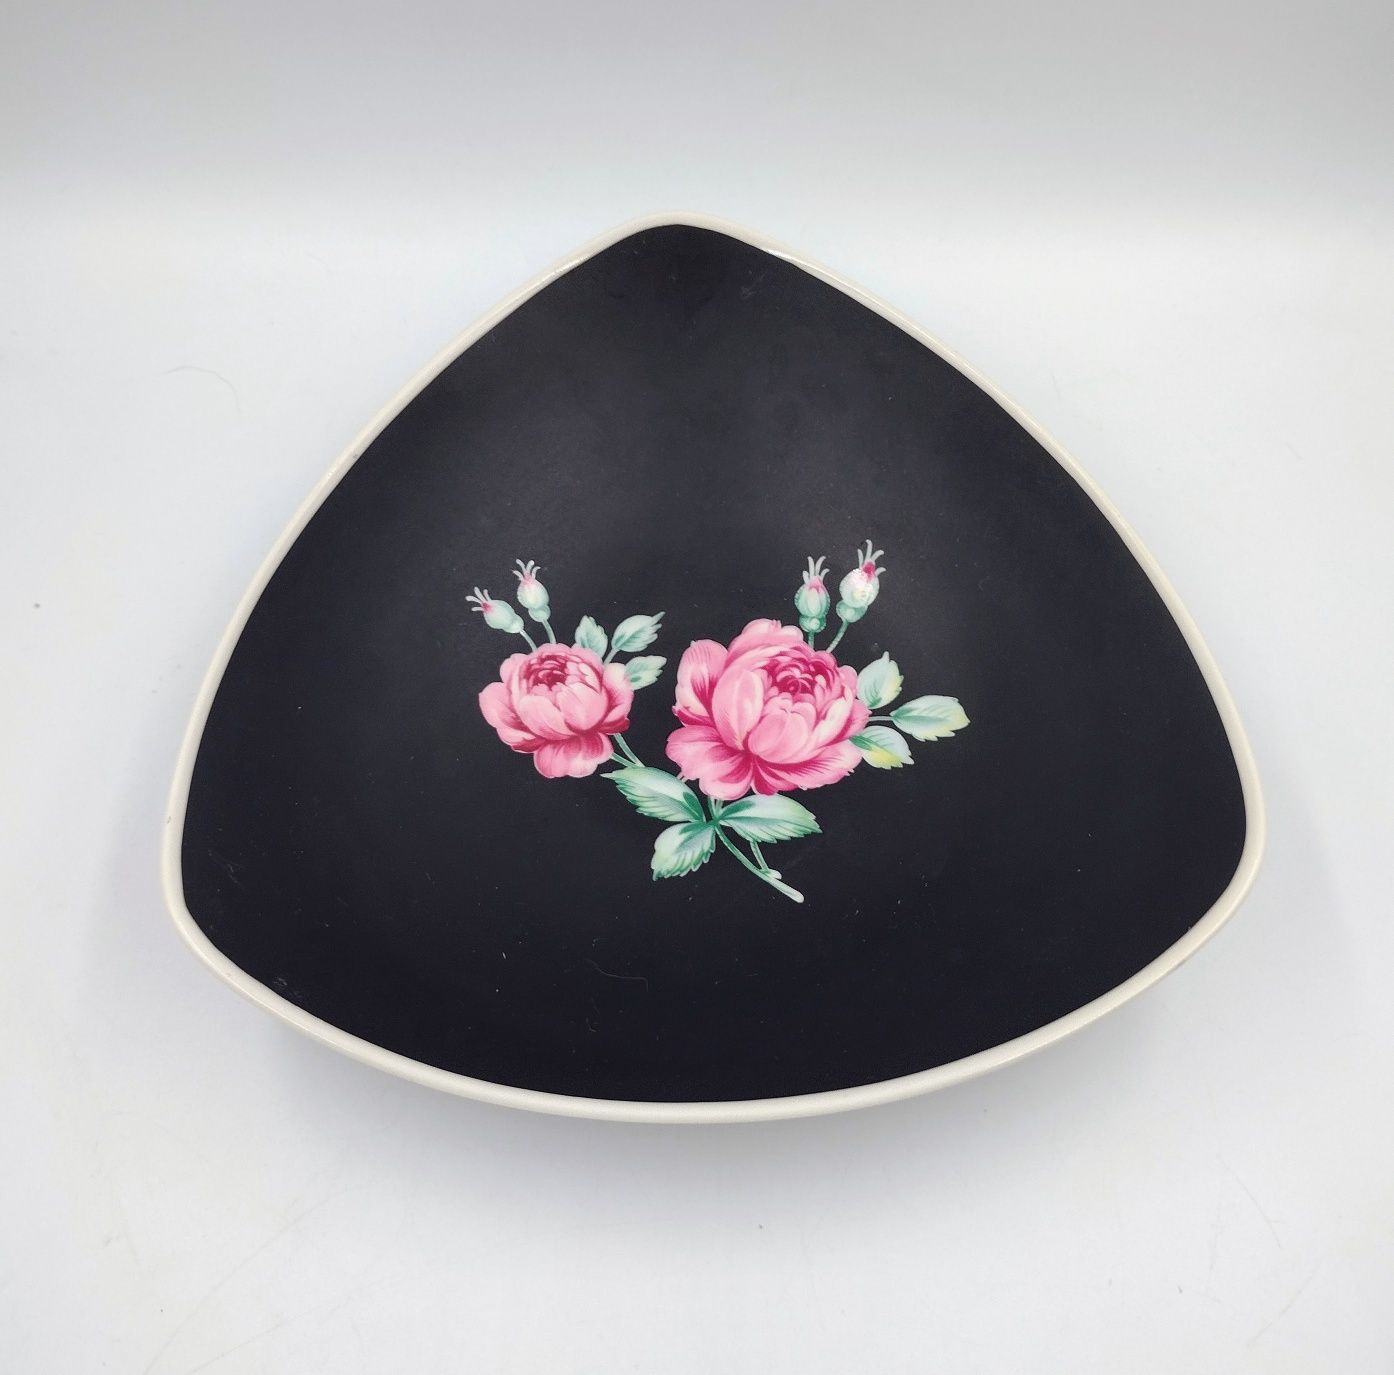 Misa porcelana czarna róża kwiaty retro design antyk vintage bukiet